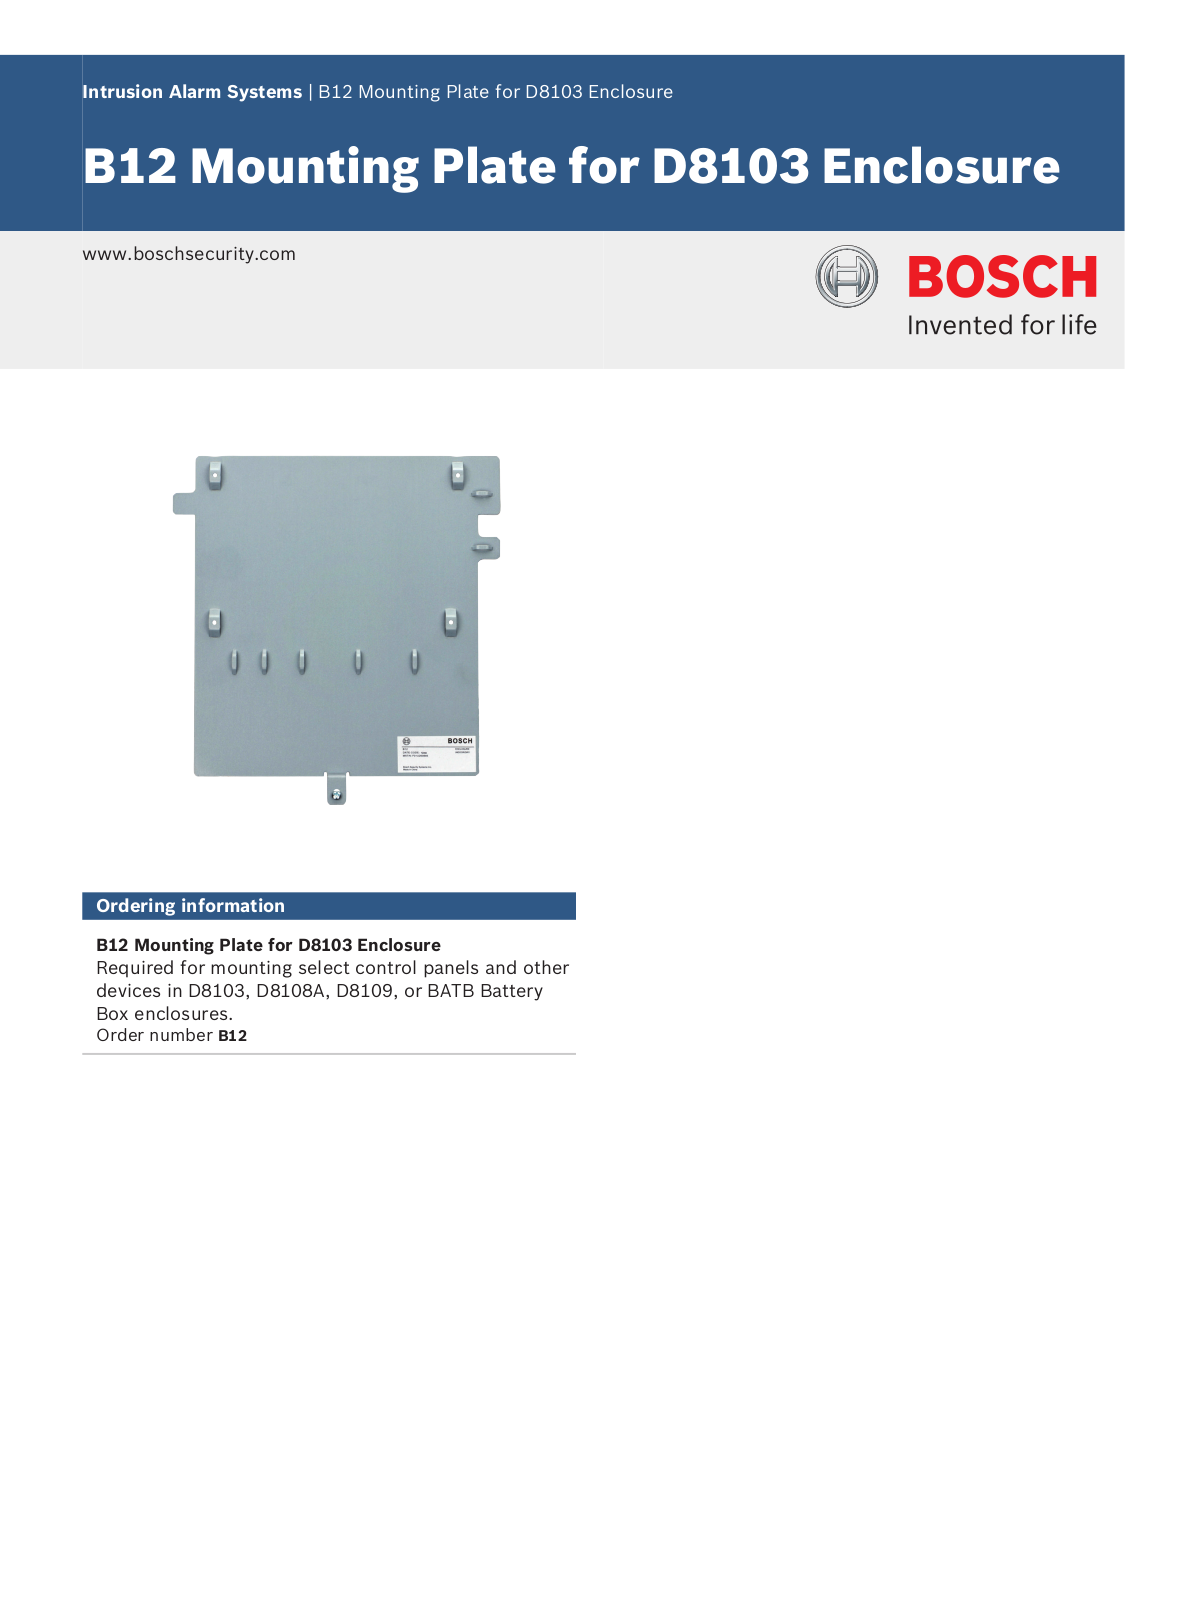 Bosch B12 Specsheet